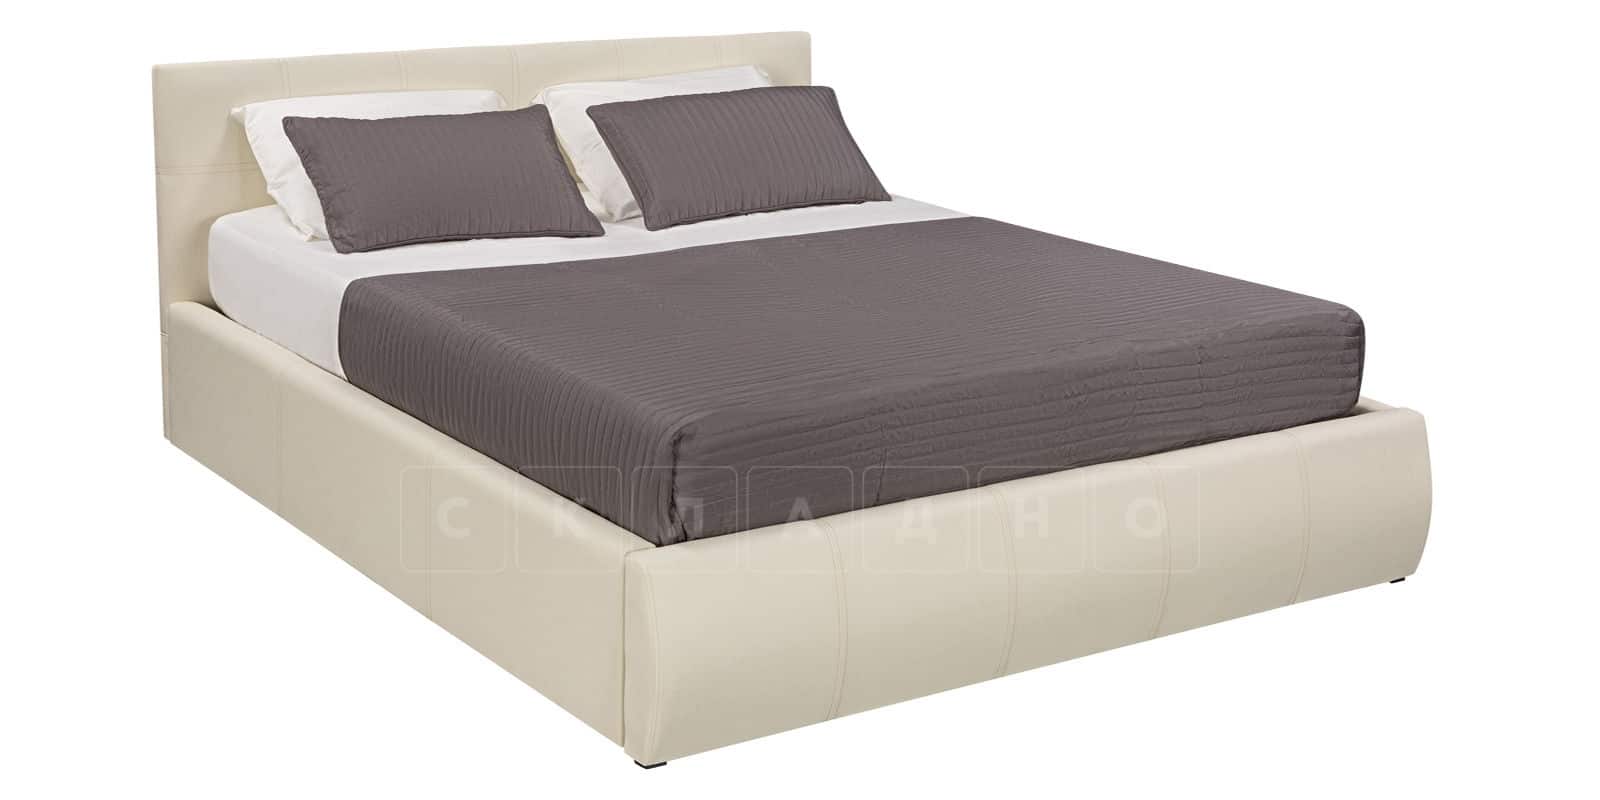 Мягкая кровать Афина 160 см экокожа молочного цвета фото 2 | интернет-магазин Складно